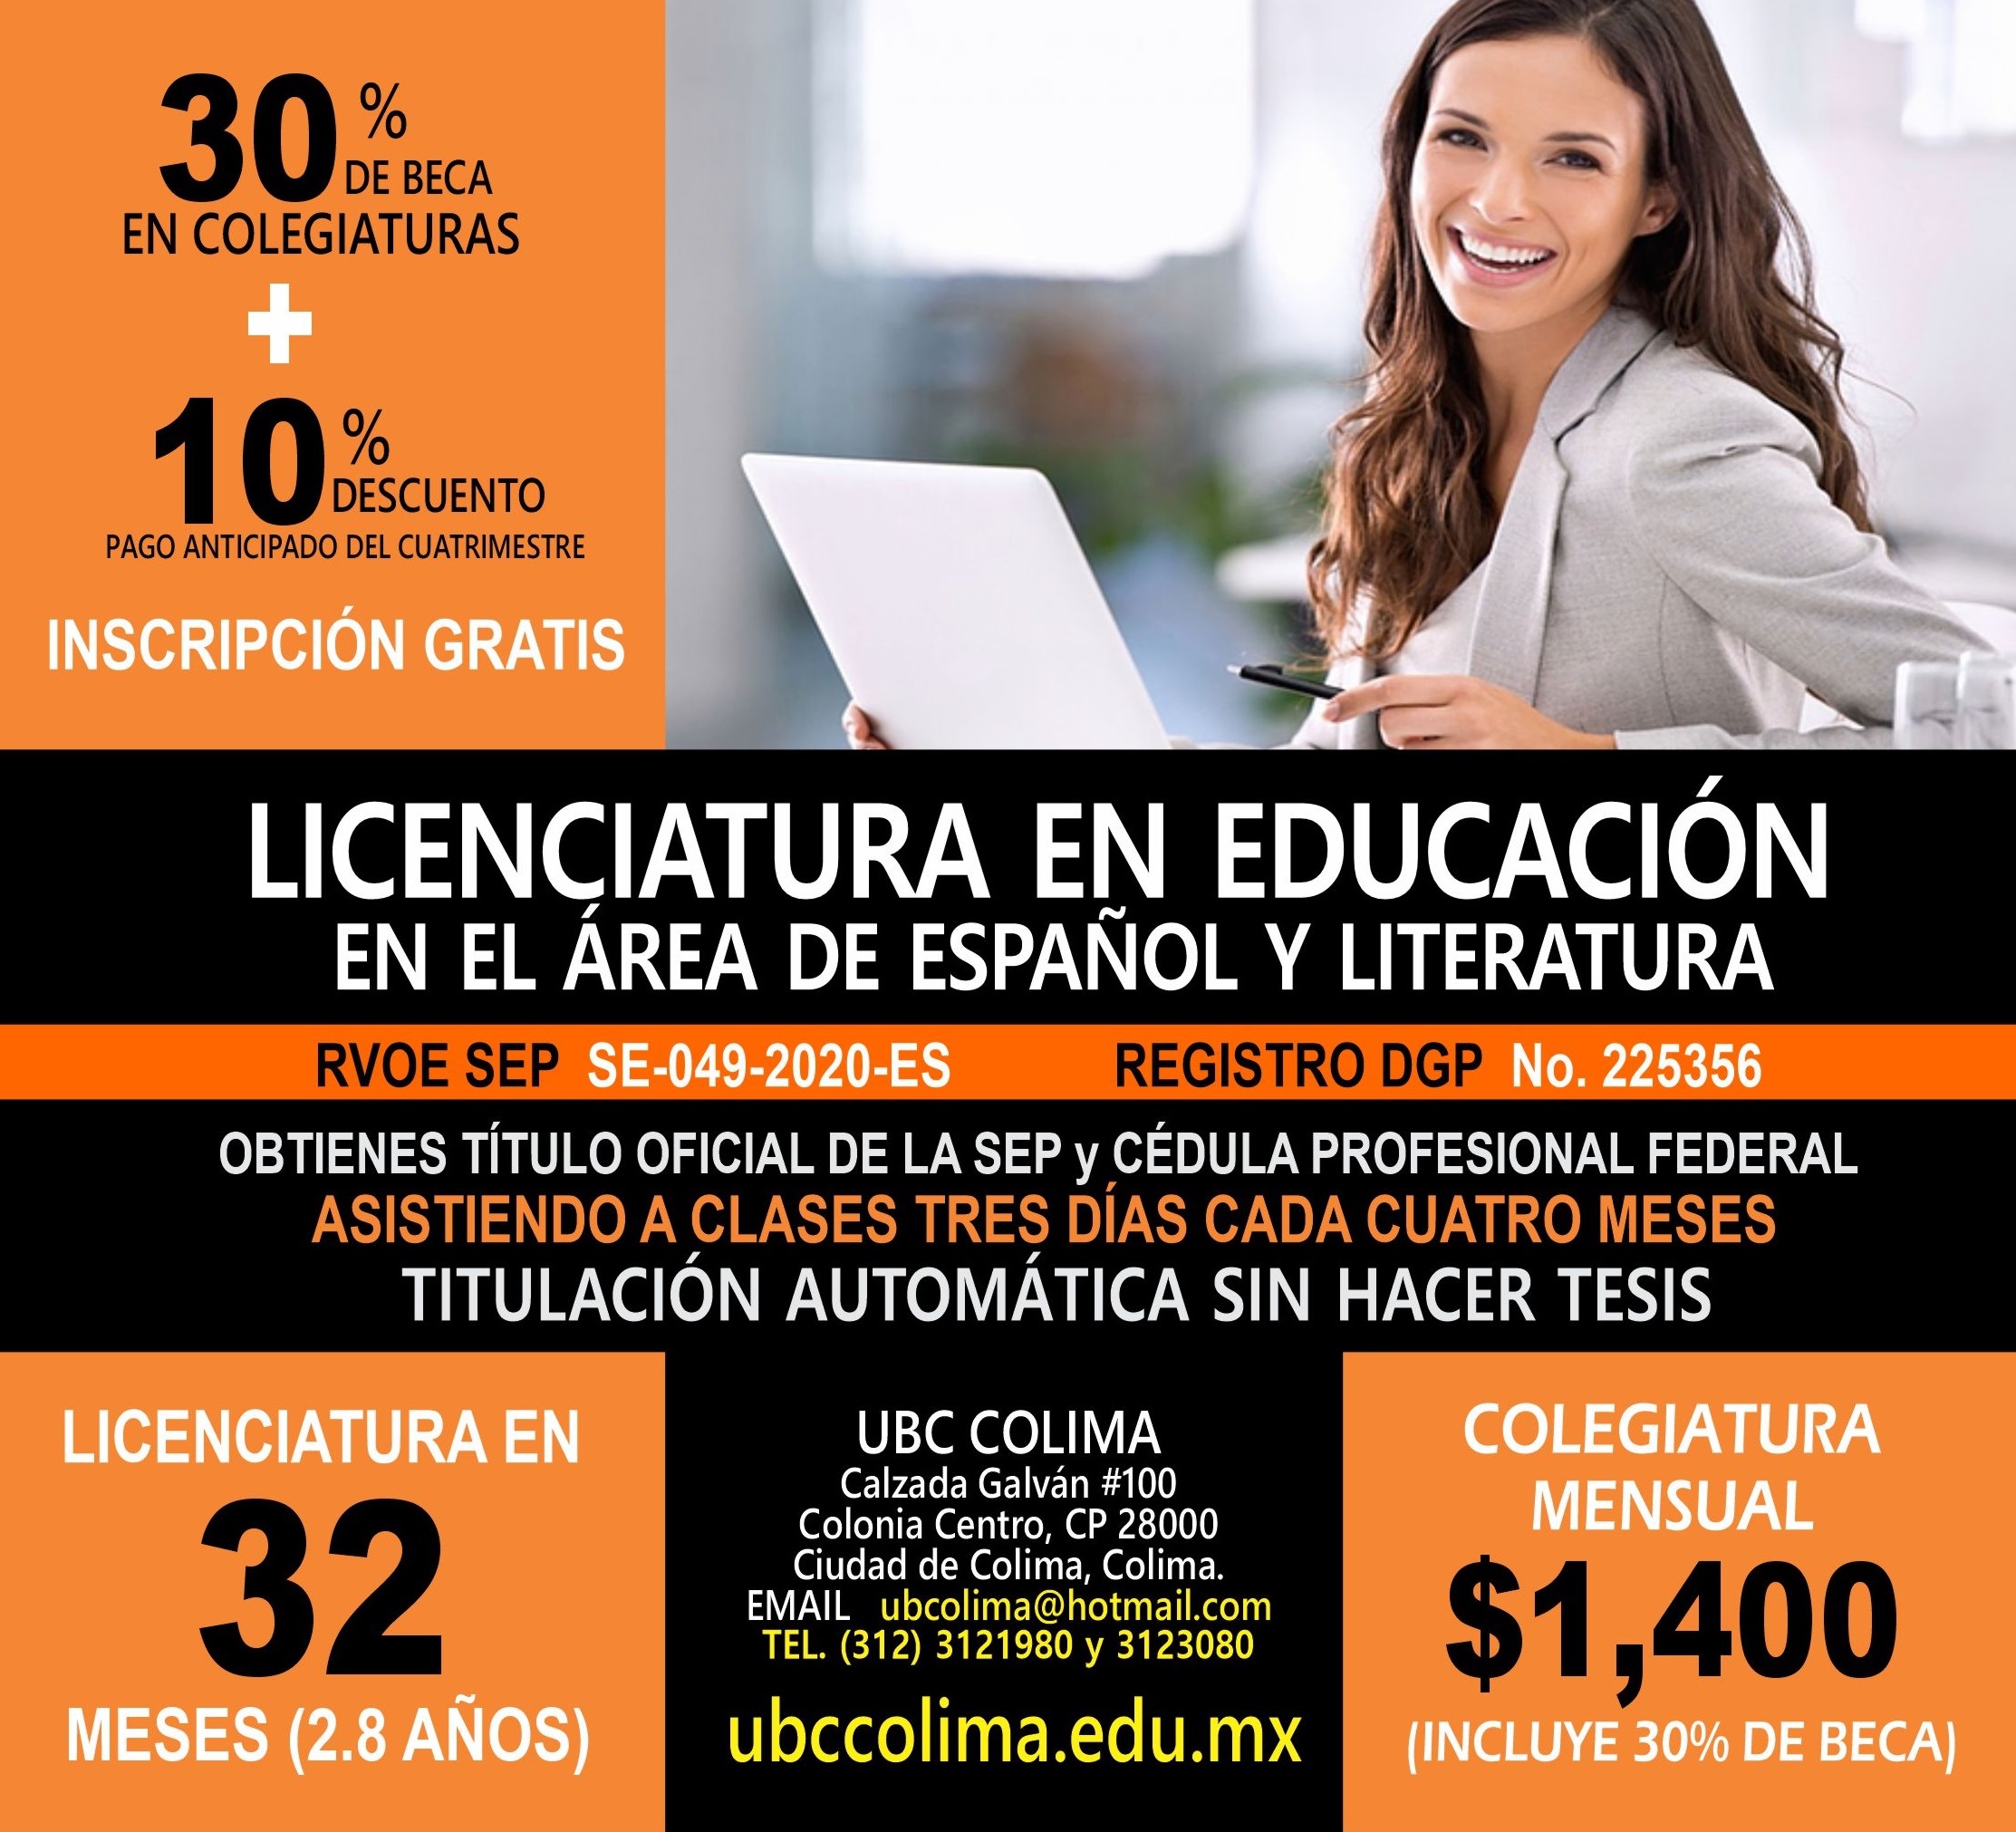 RVOE oficial: Licenciatura en Educación en el Área de Español y Literatura